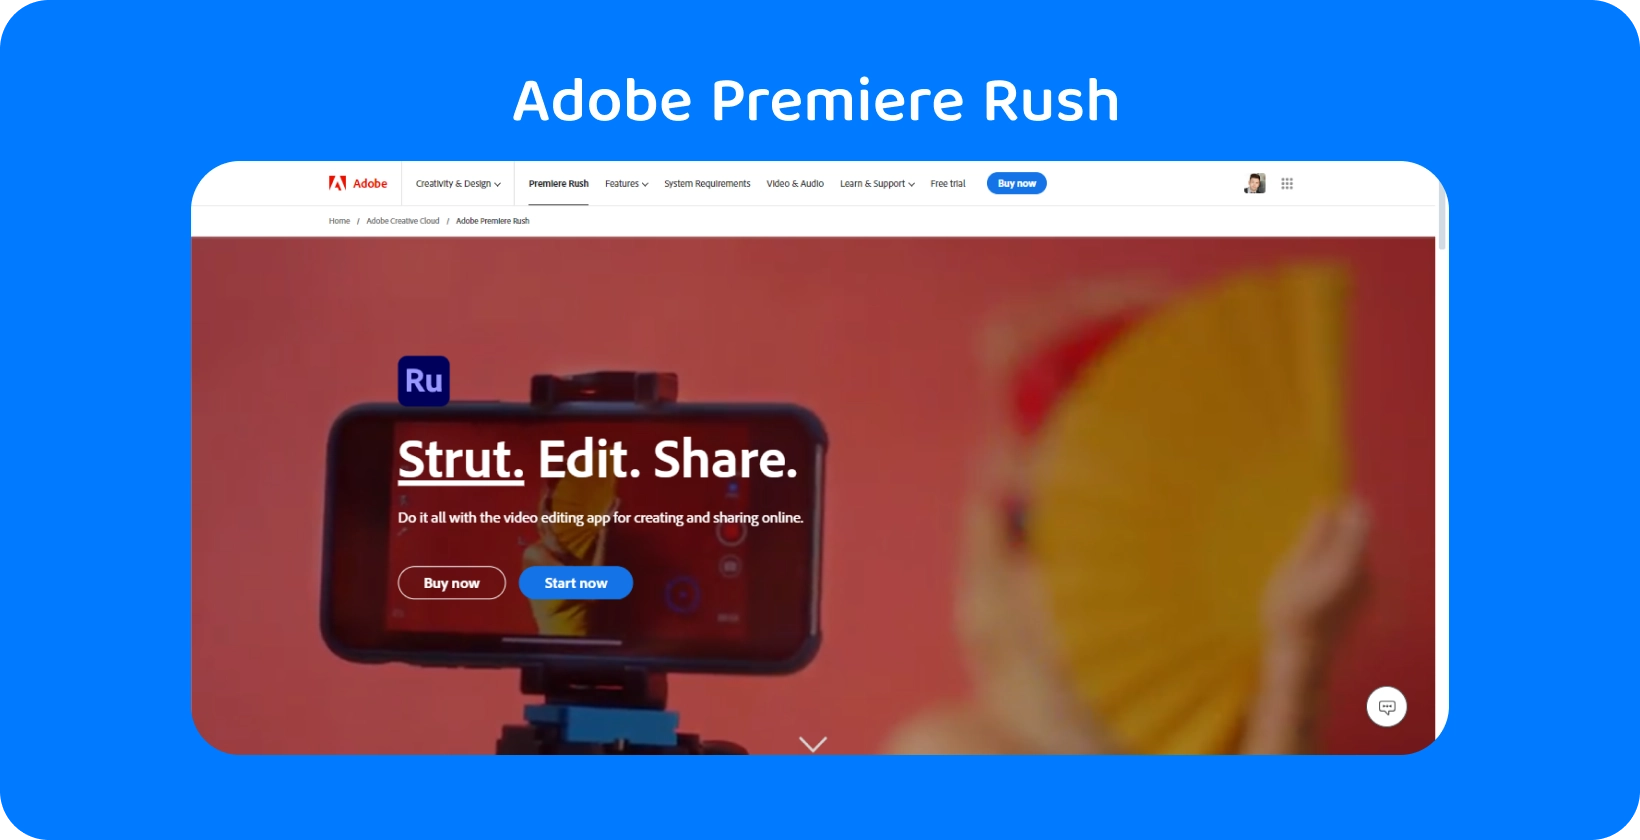 Adobe Premiere Rush trên điện thoại thông minh gắn trên giá ba chân với khẩu hiệu 'Strut. Edit. Share.' để chỉnh sửa video.